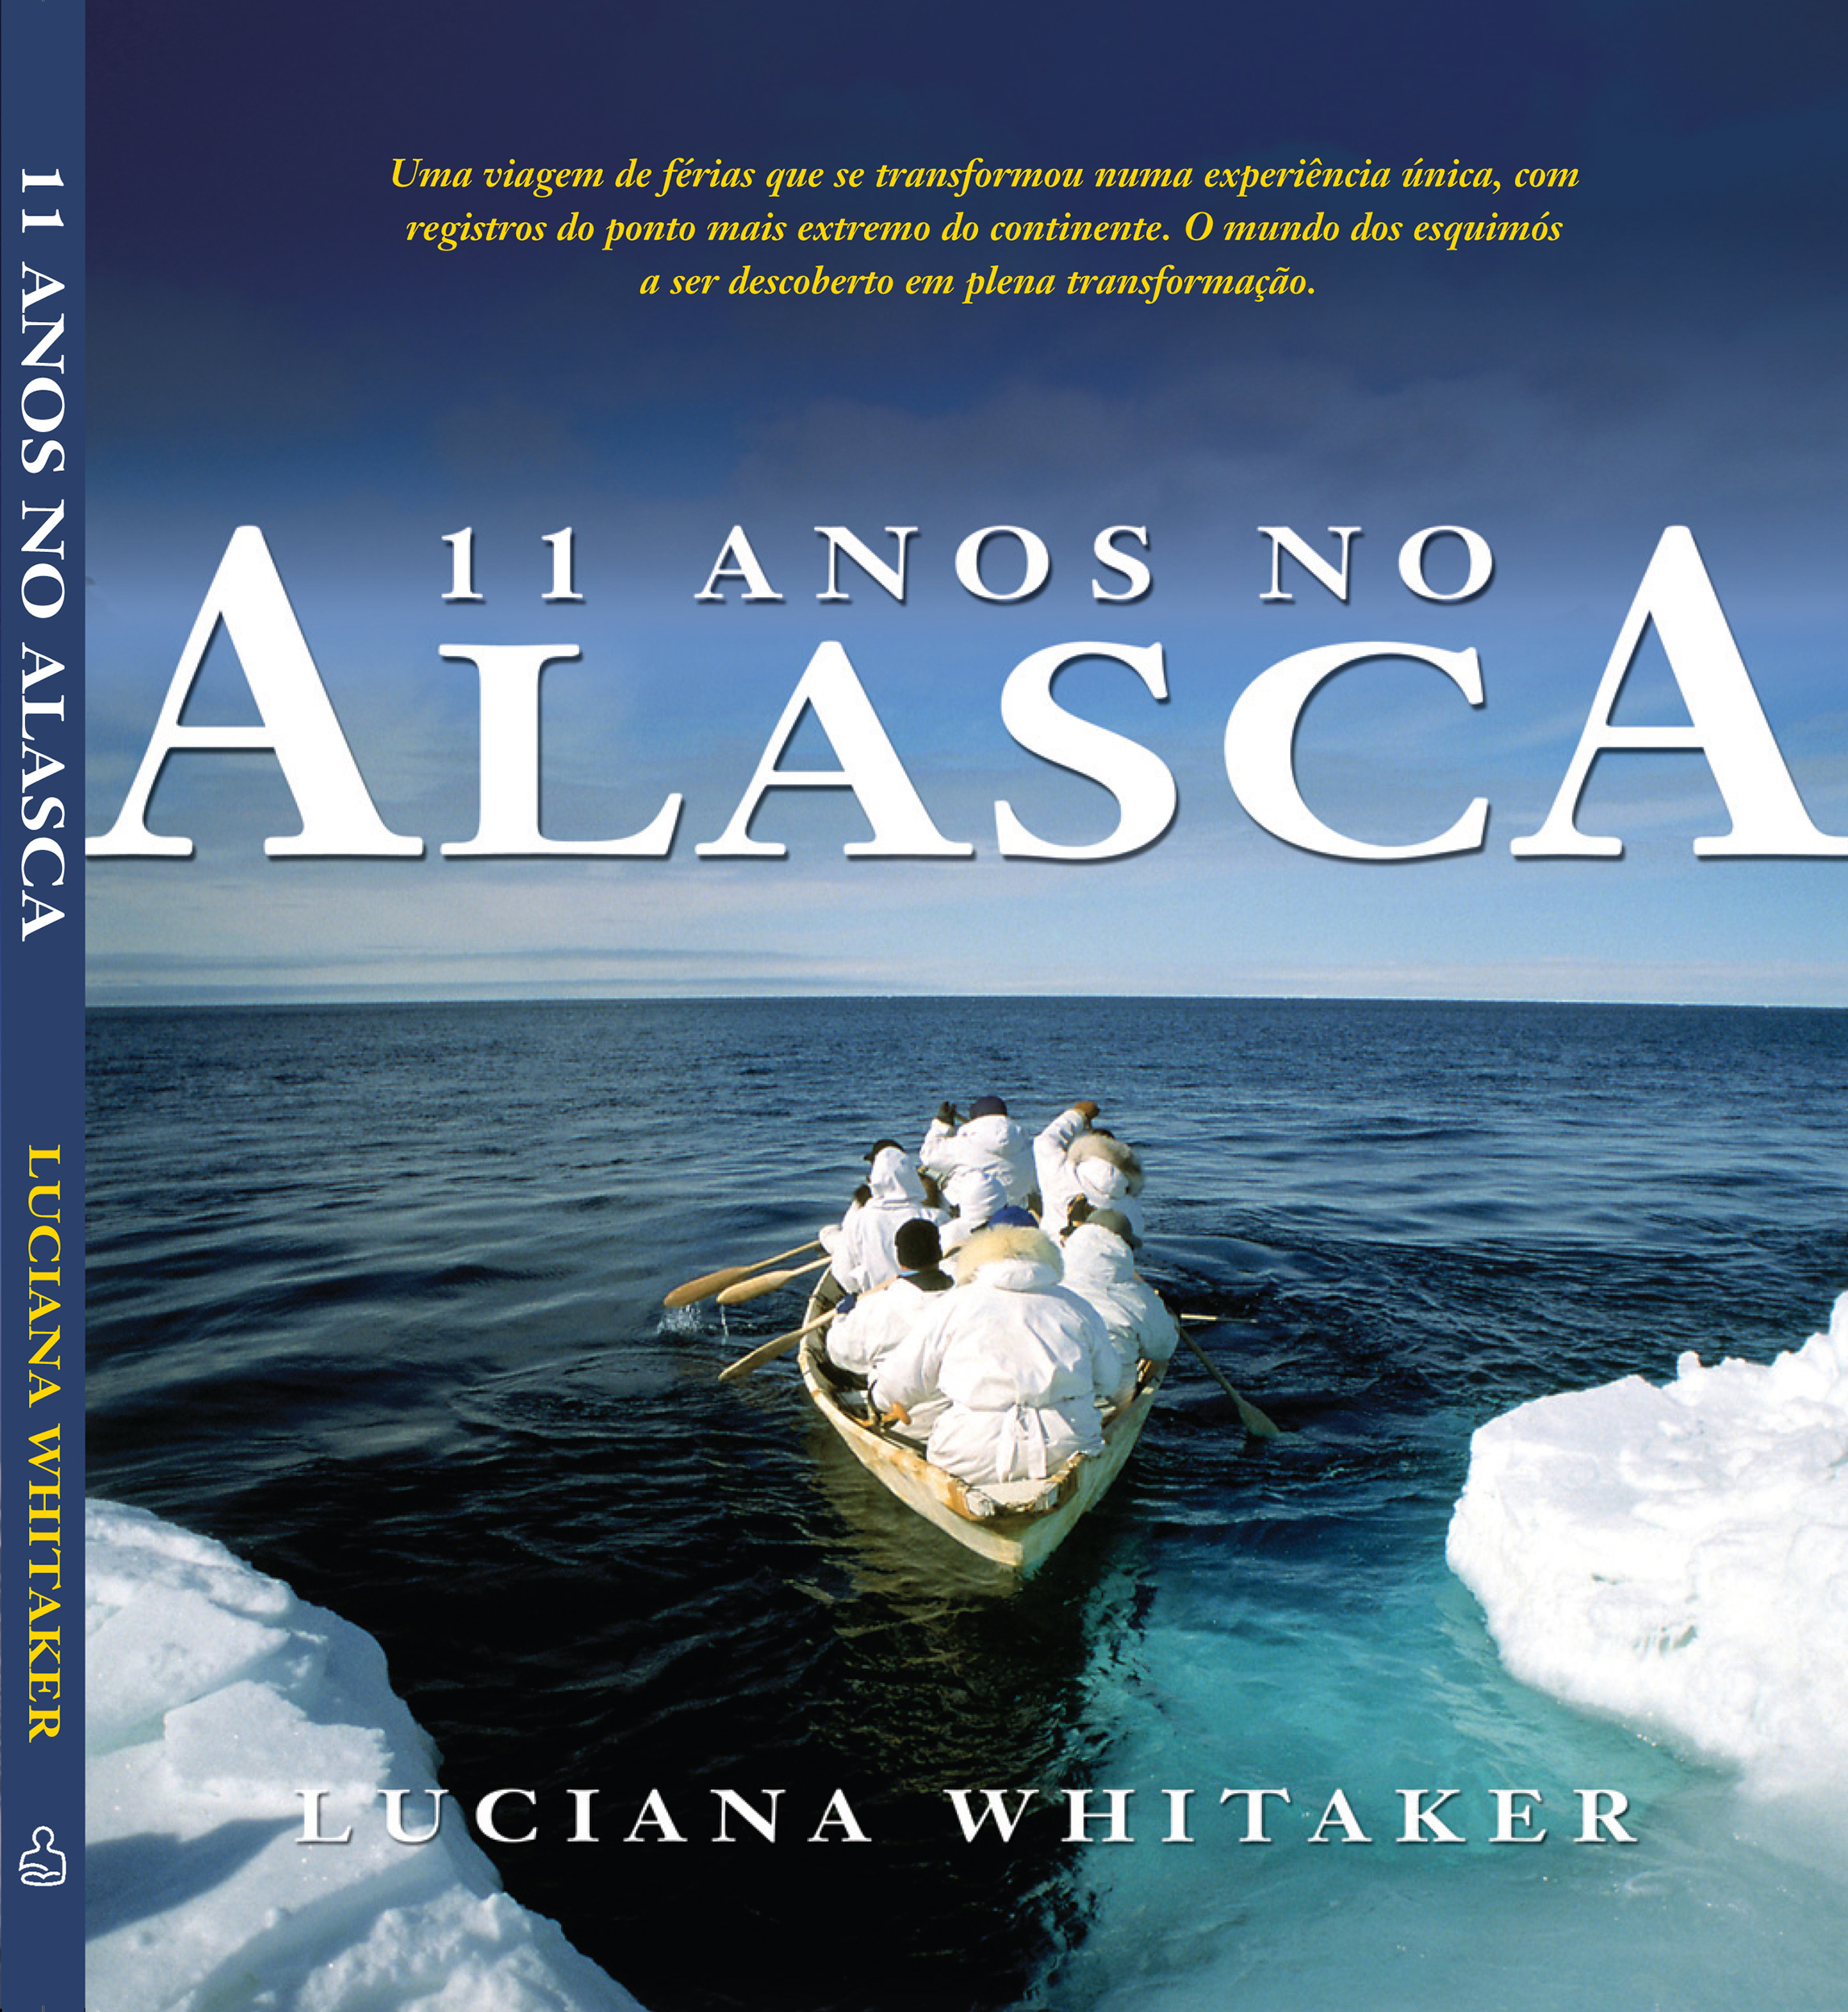 11 Years in Alaska, Ediouro, Brazil 2008